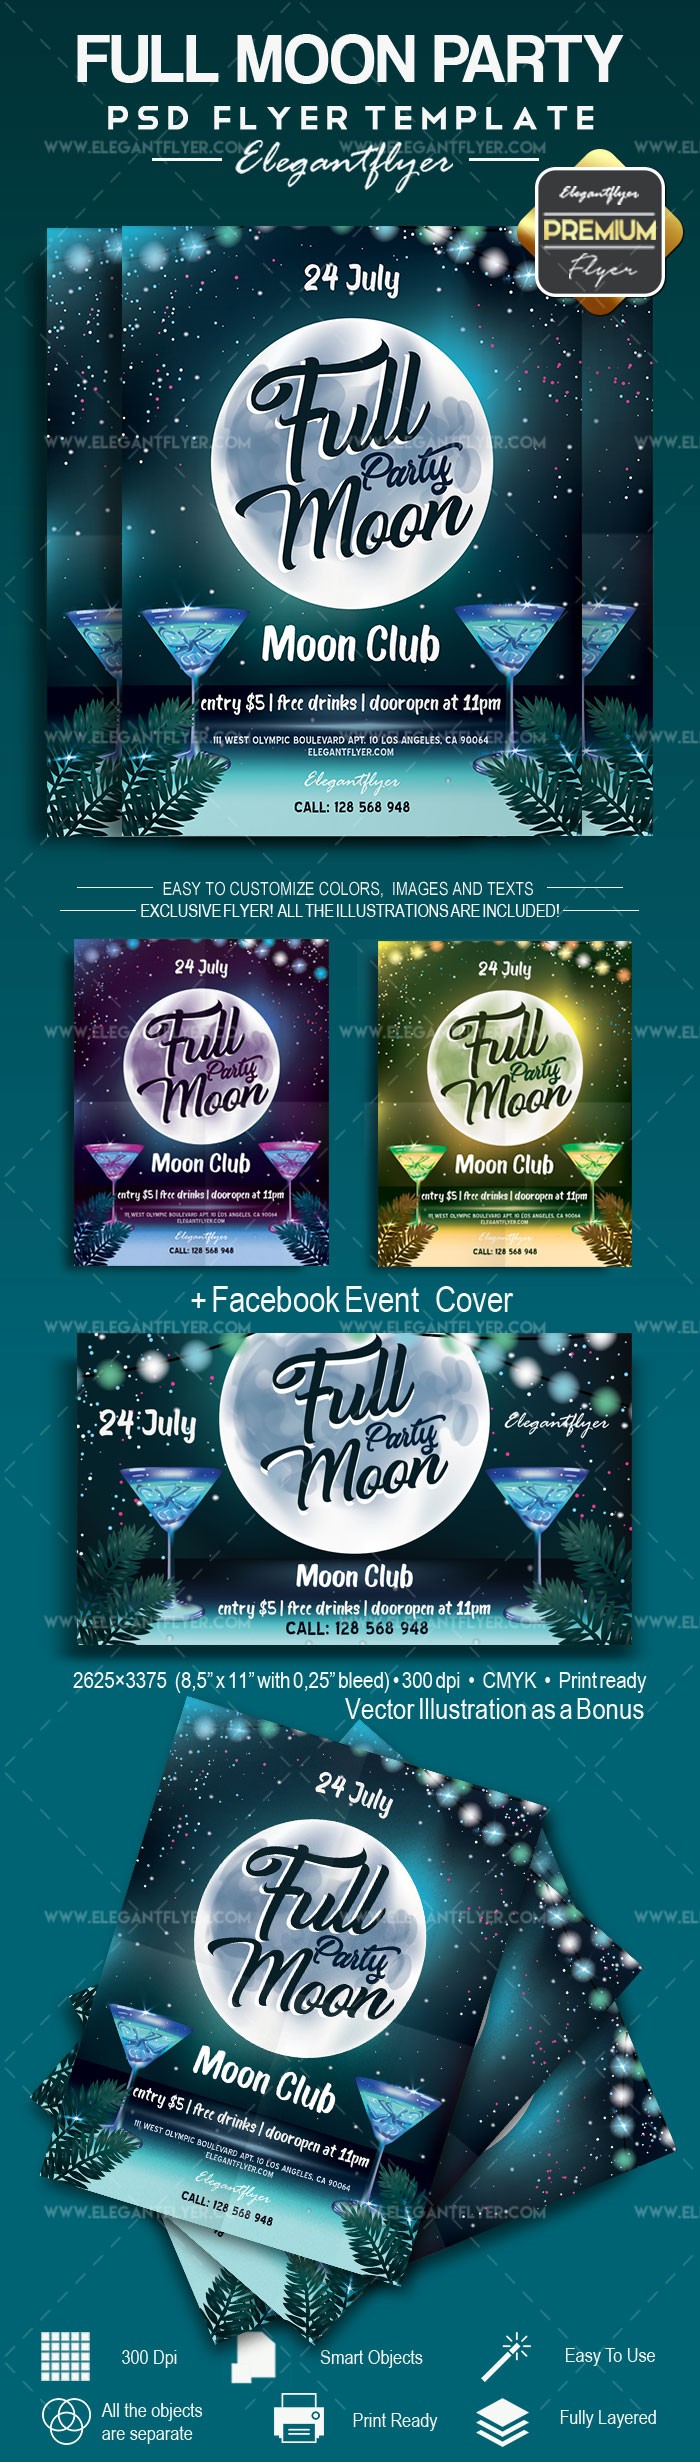 Full Moon Party by ElegantFlyer